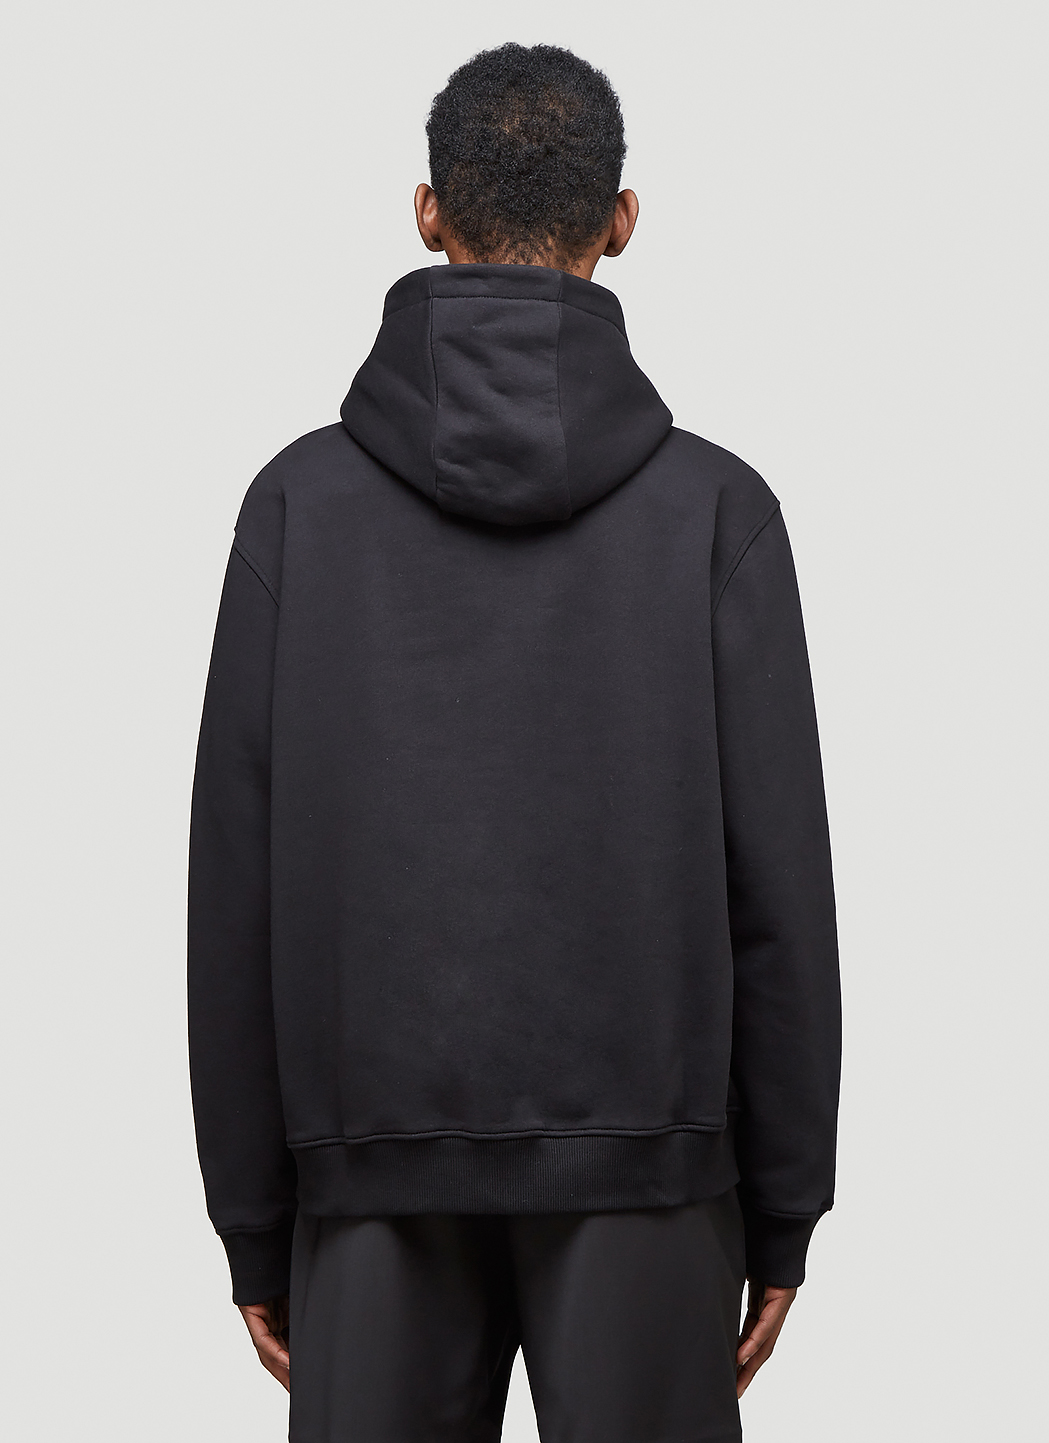 1017 ALYX 9SM Men's Zip-Up Hooded Sweatshirt in Black | LN-CC